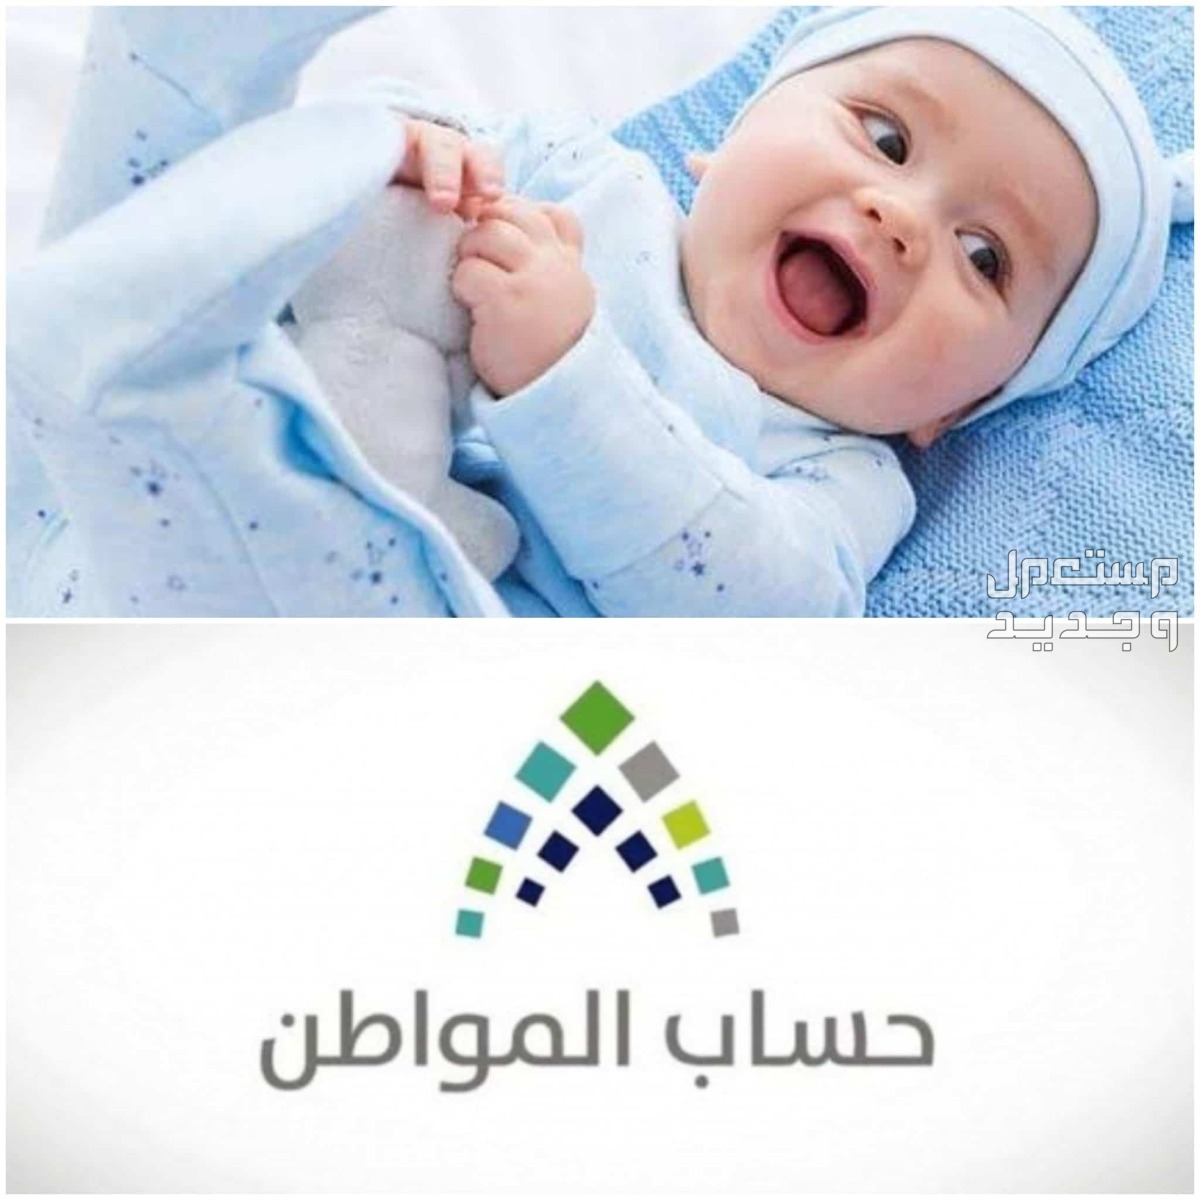 طريقة تسجيل المولود الجديد في حساب المواطن 1445 في فلسطين تسجيل المولود الجديد في حساب المواطن